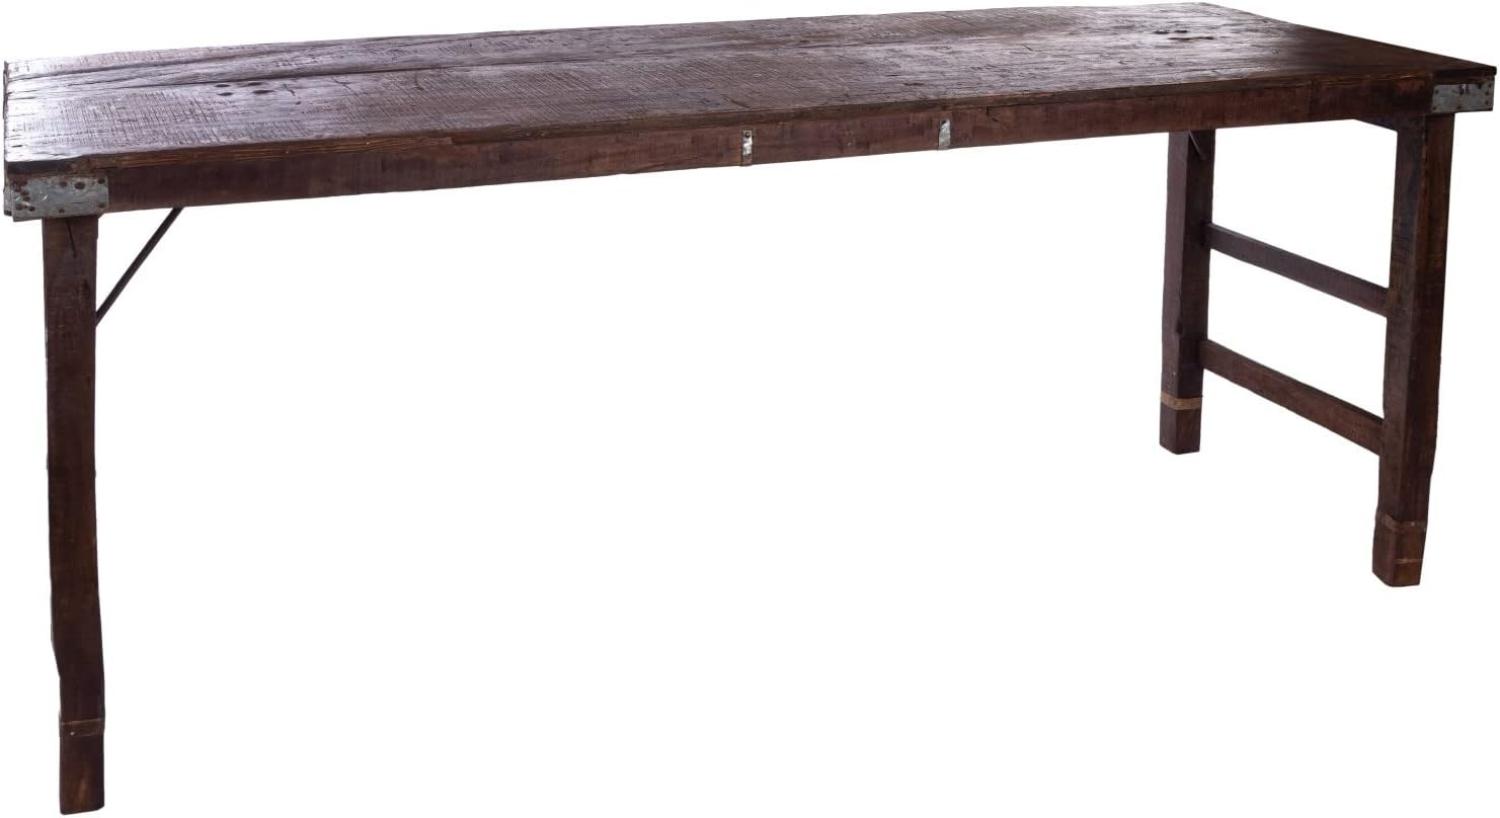 Holztisch 170 x 55 x 70 cm aus recyceltem Holz dunkel mit klappbaren Beinen Bild 1